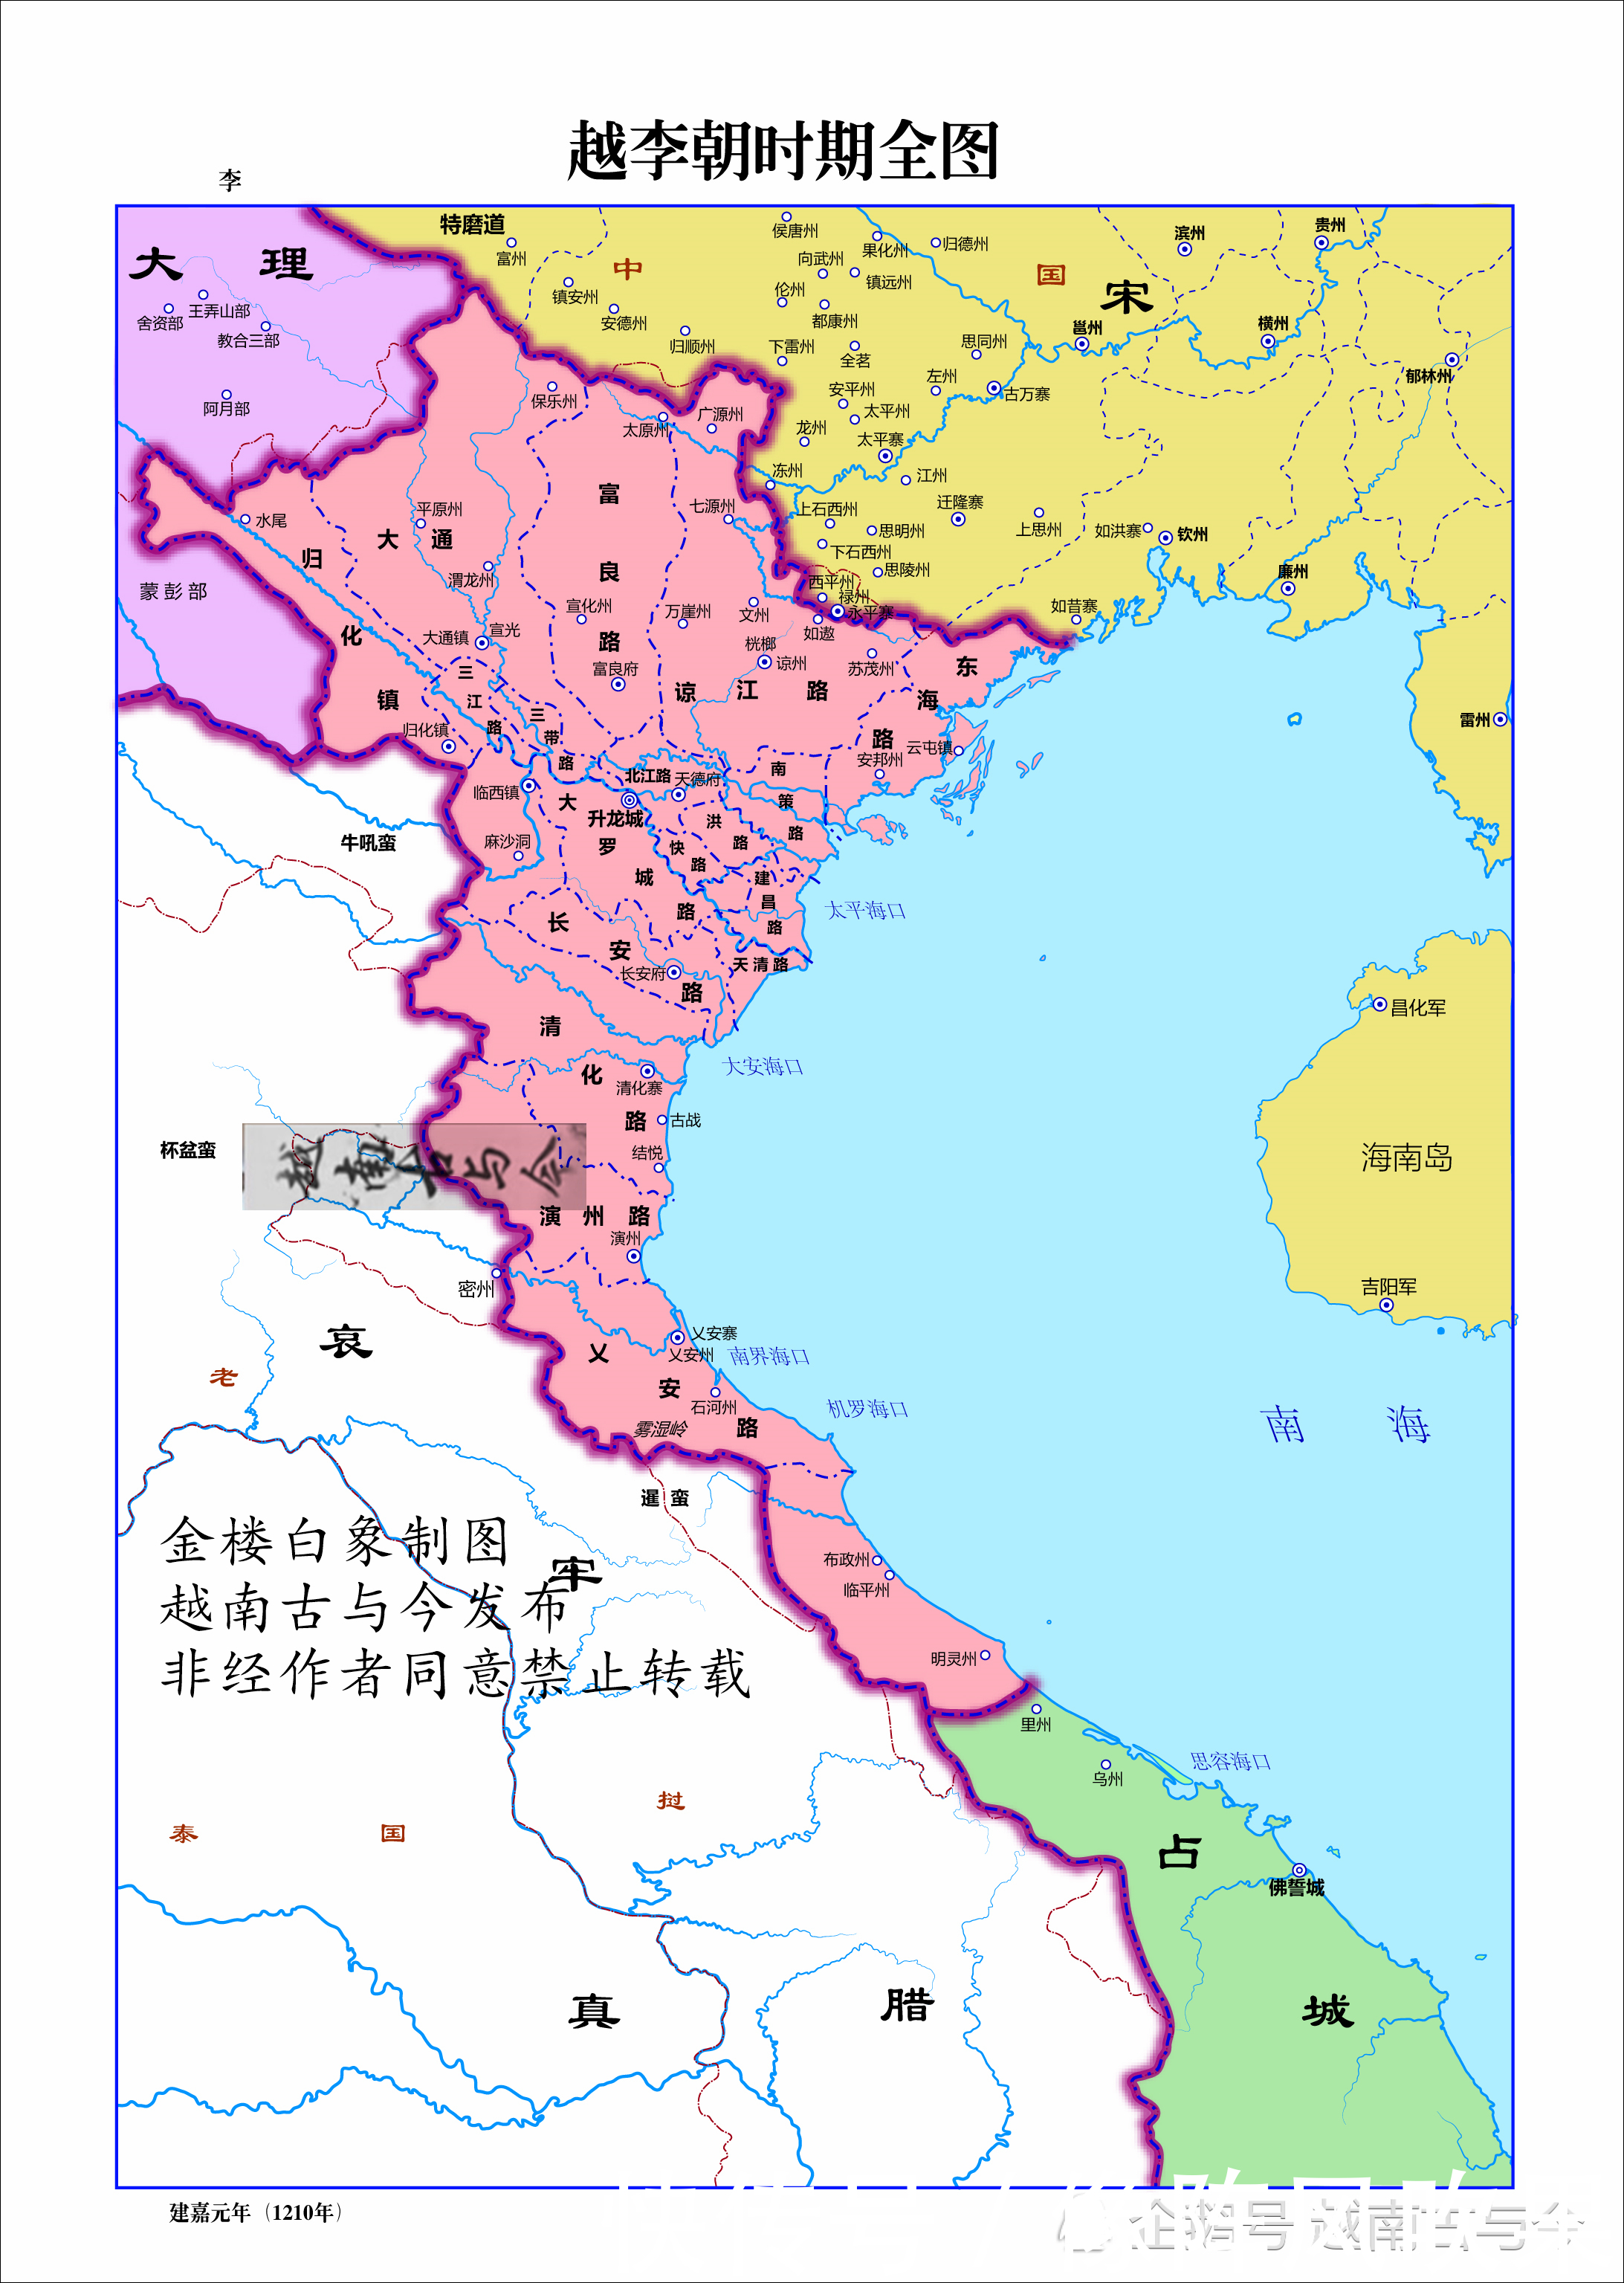 越南一千年历史地图演变,一步步南进成为东南